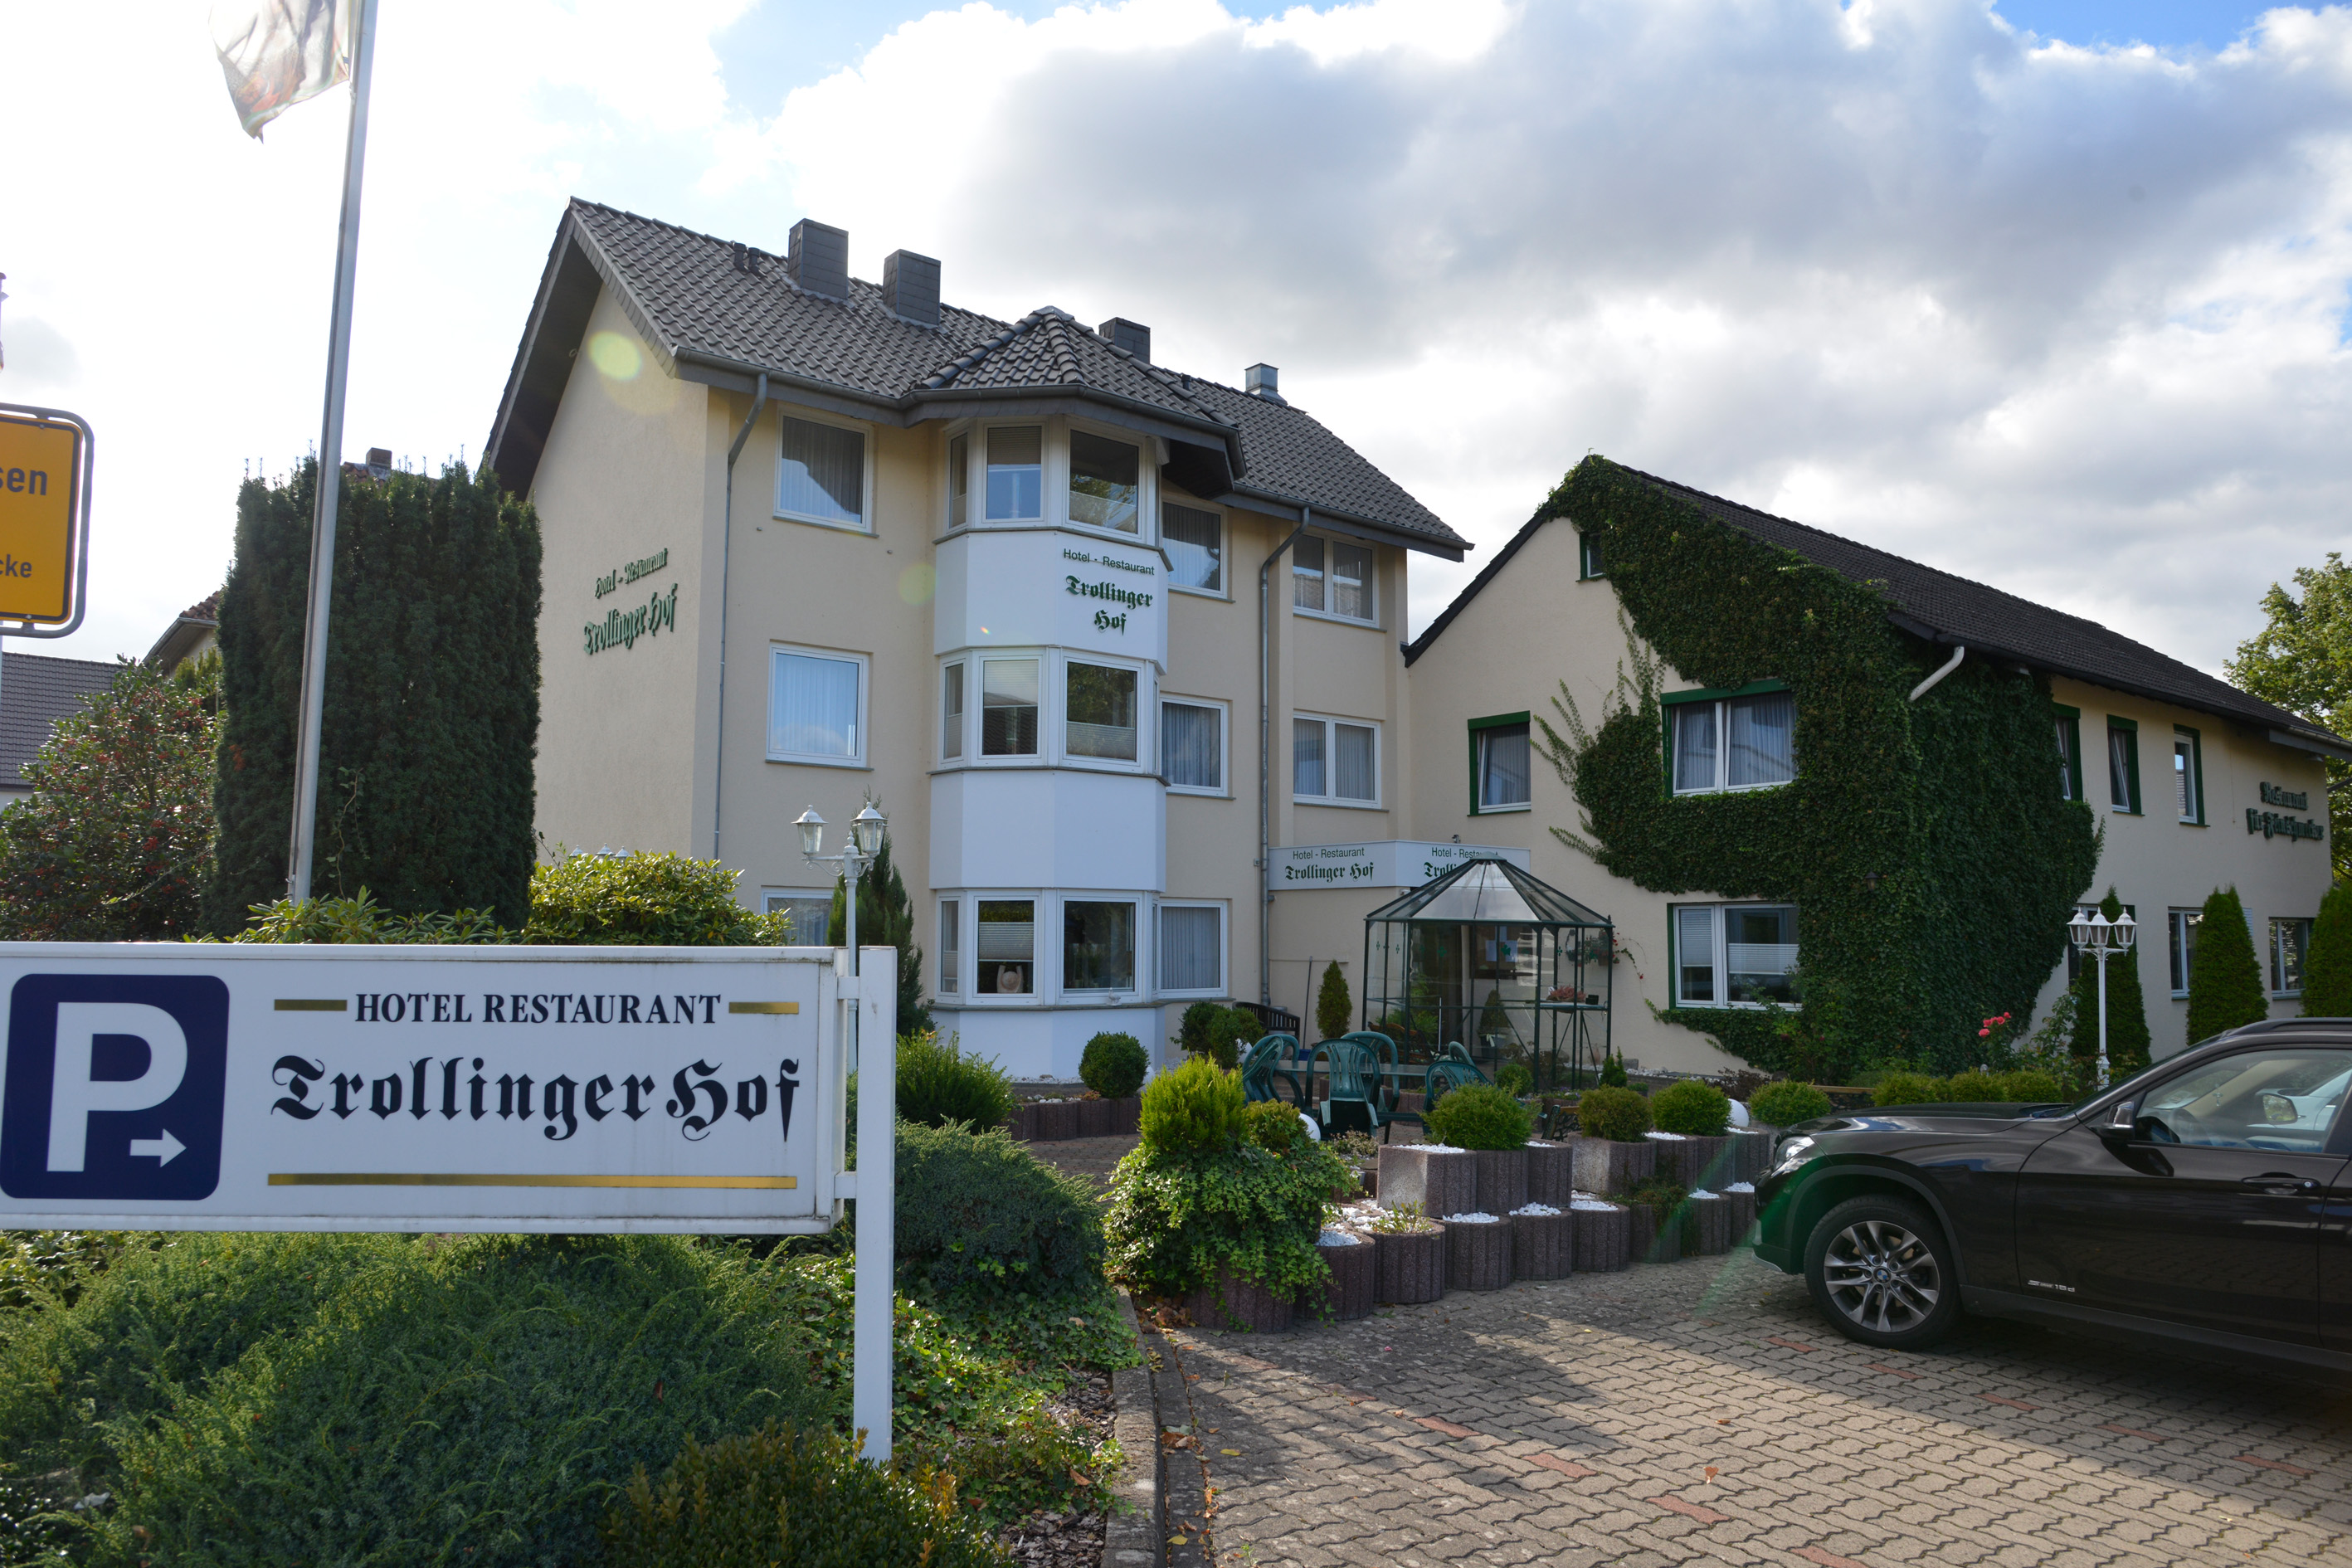 Club hotel osterbach bad oeynhausen.